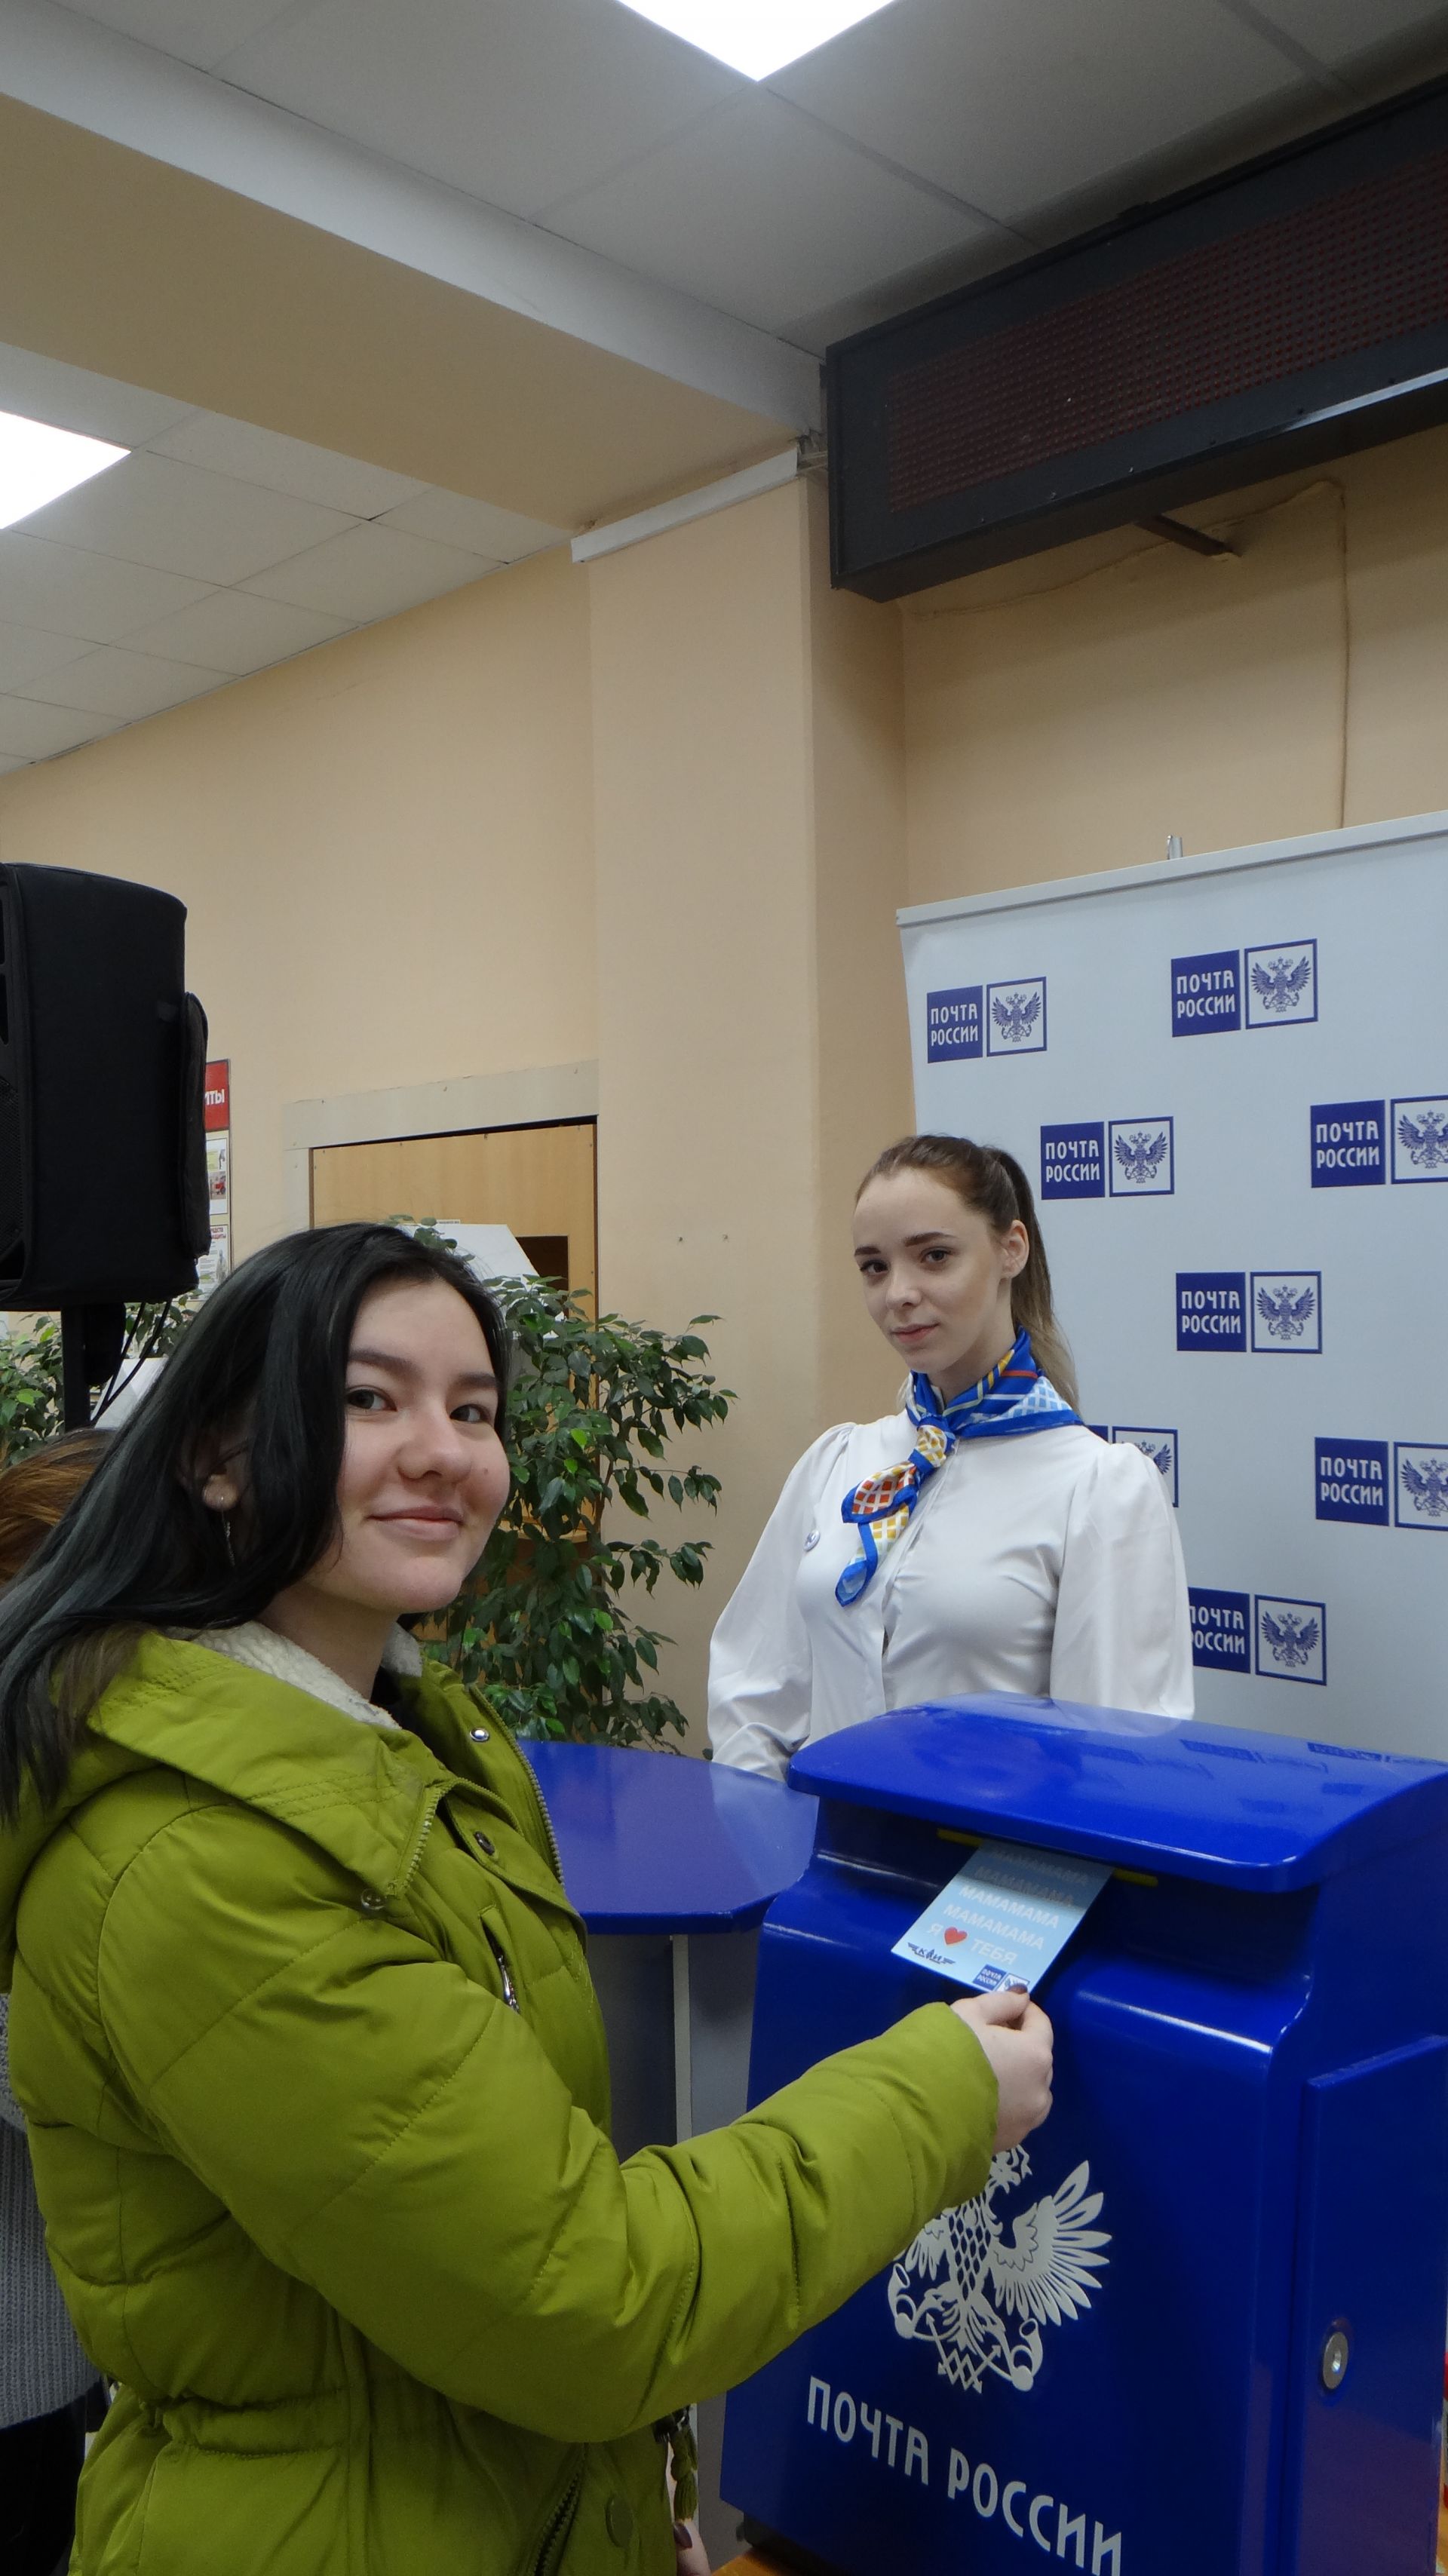 Почта России бесплатно доставит около 1000 открыток студентов КНИТУ-КАИ своим мамам к празднику